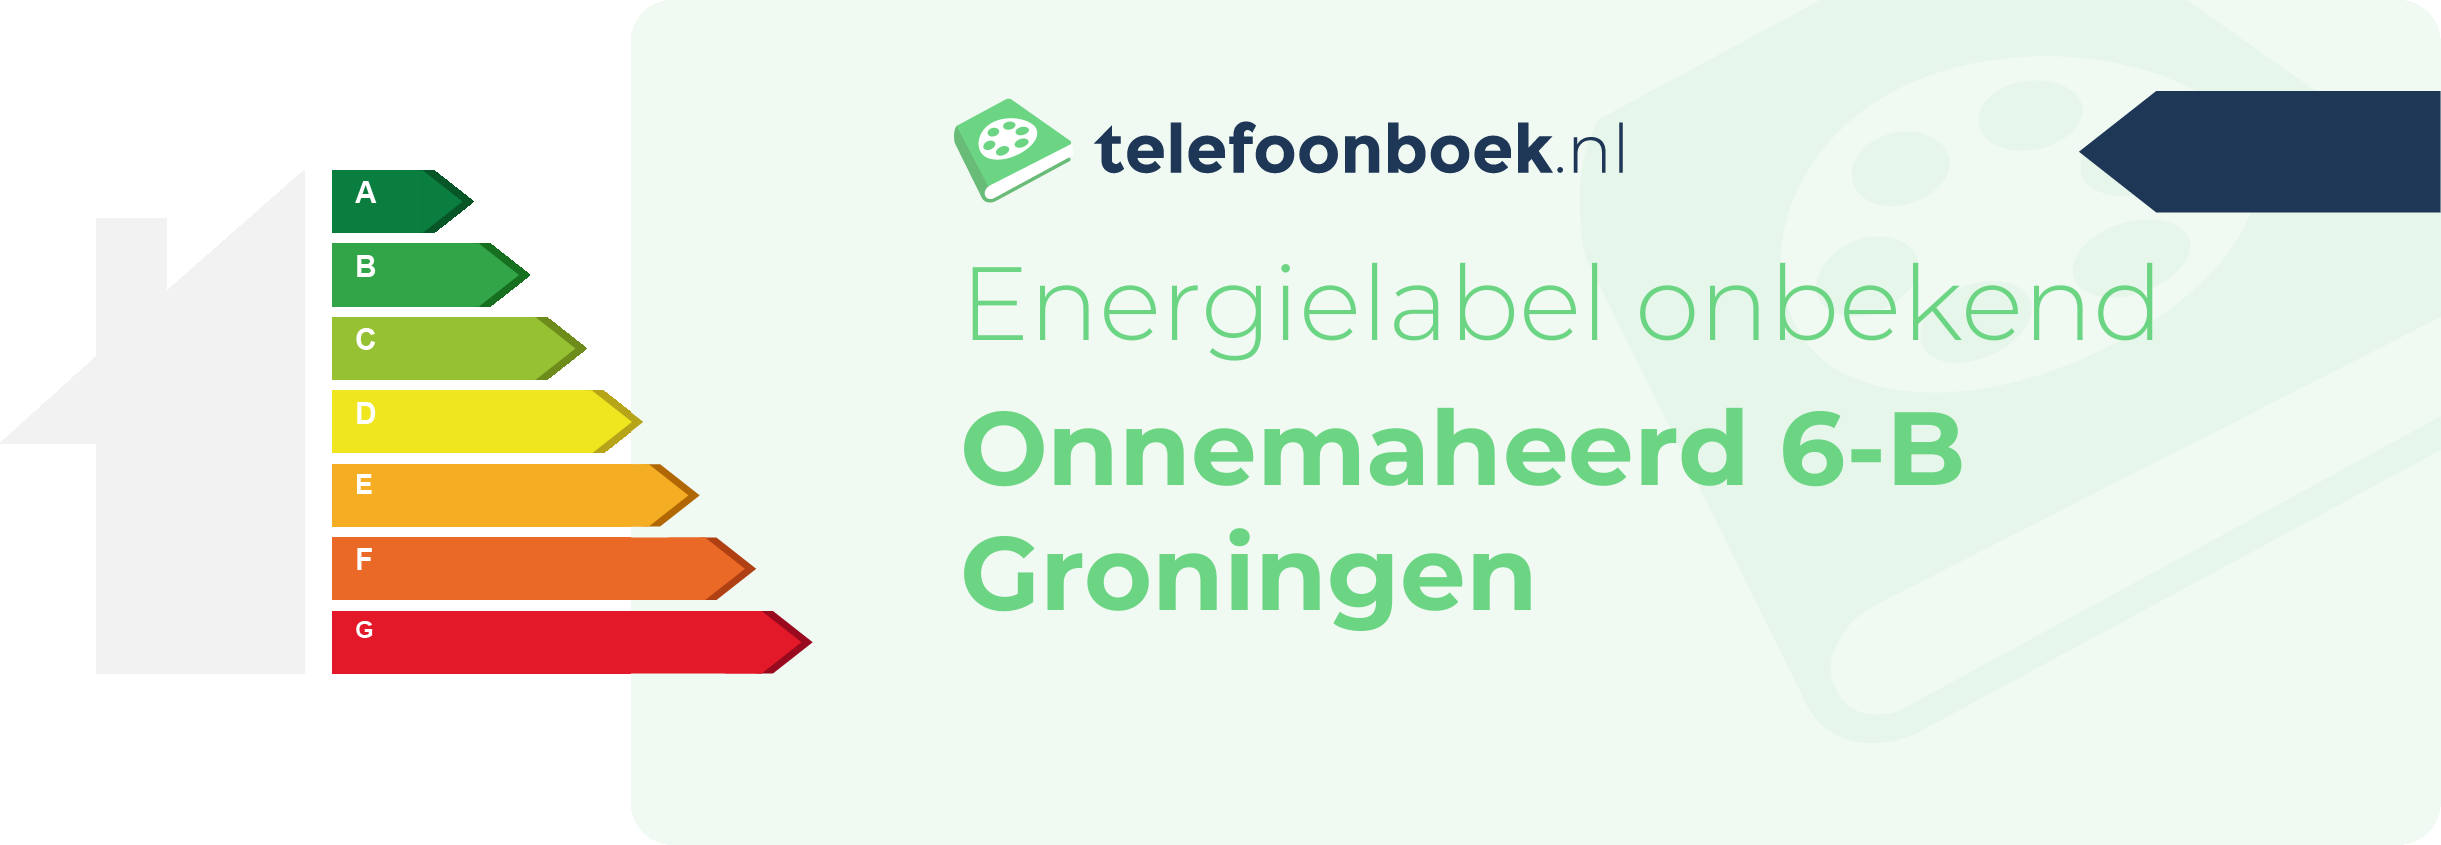 Energielabel Onnemaheerd 6-B Groningen